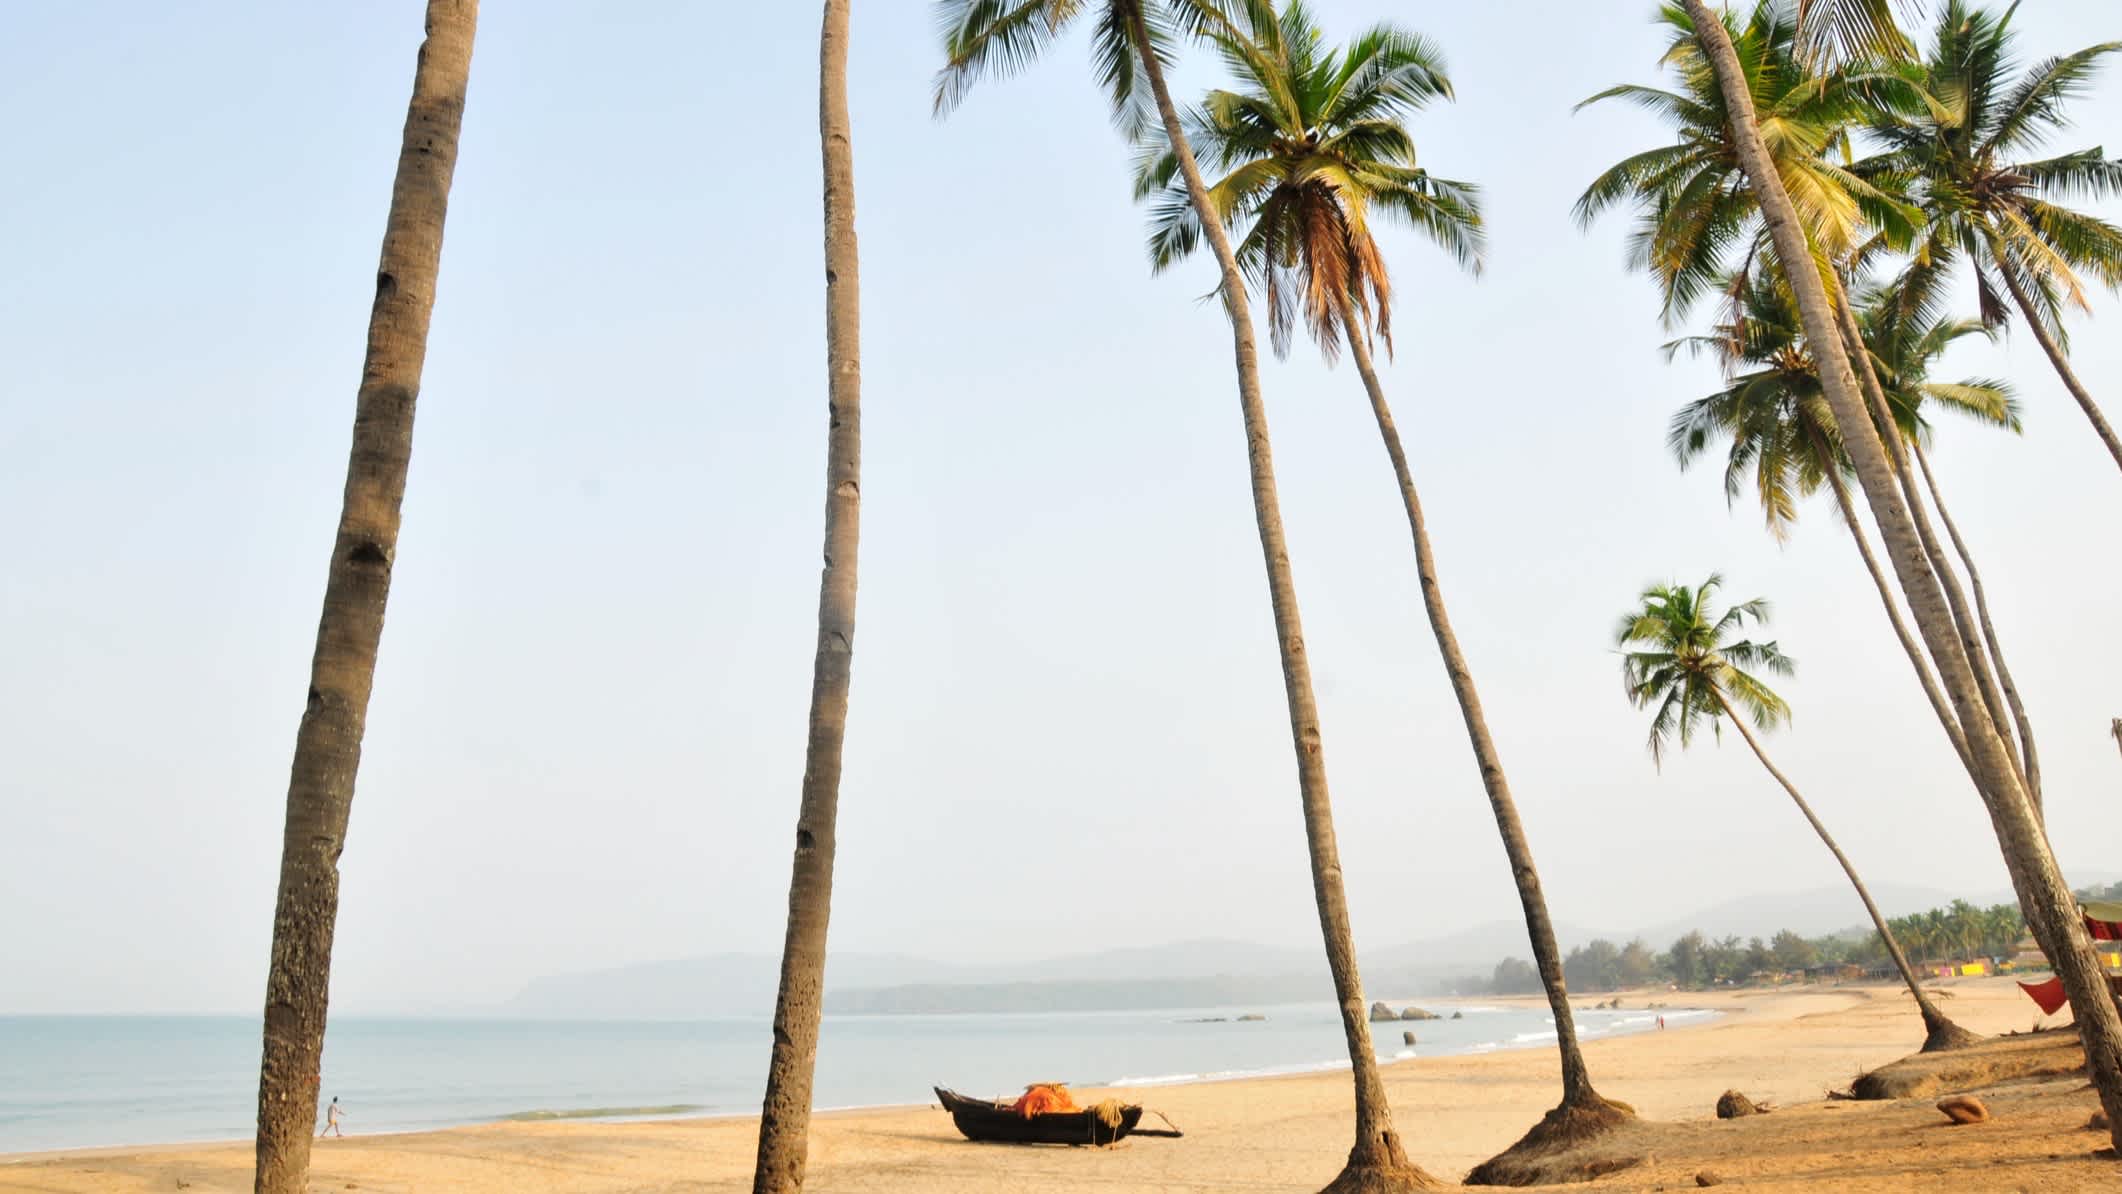 Palmiers sur une plage de sable avec un bateau, plage d'Agonda, à Goa en Inde.